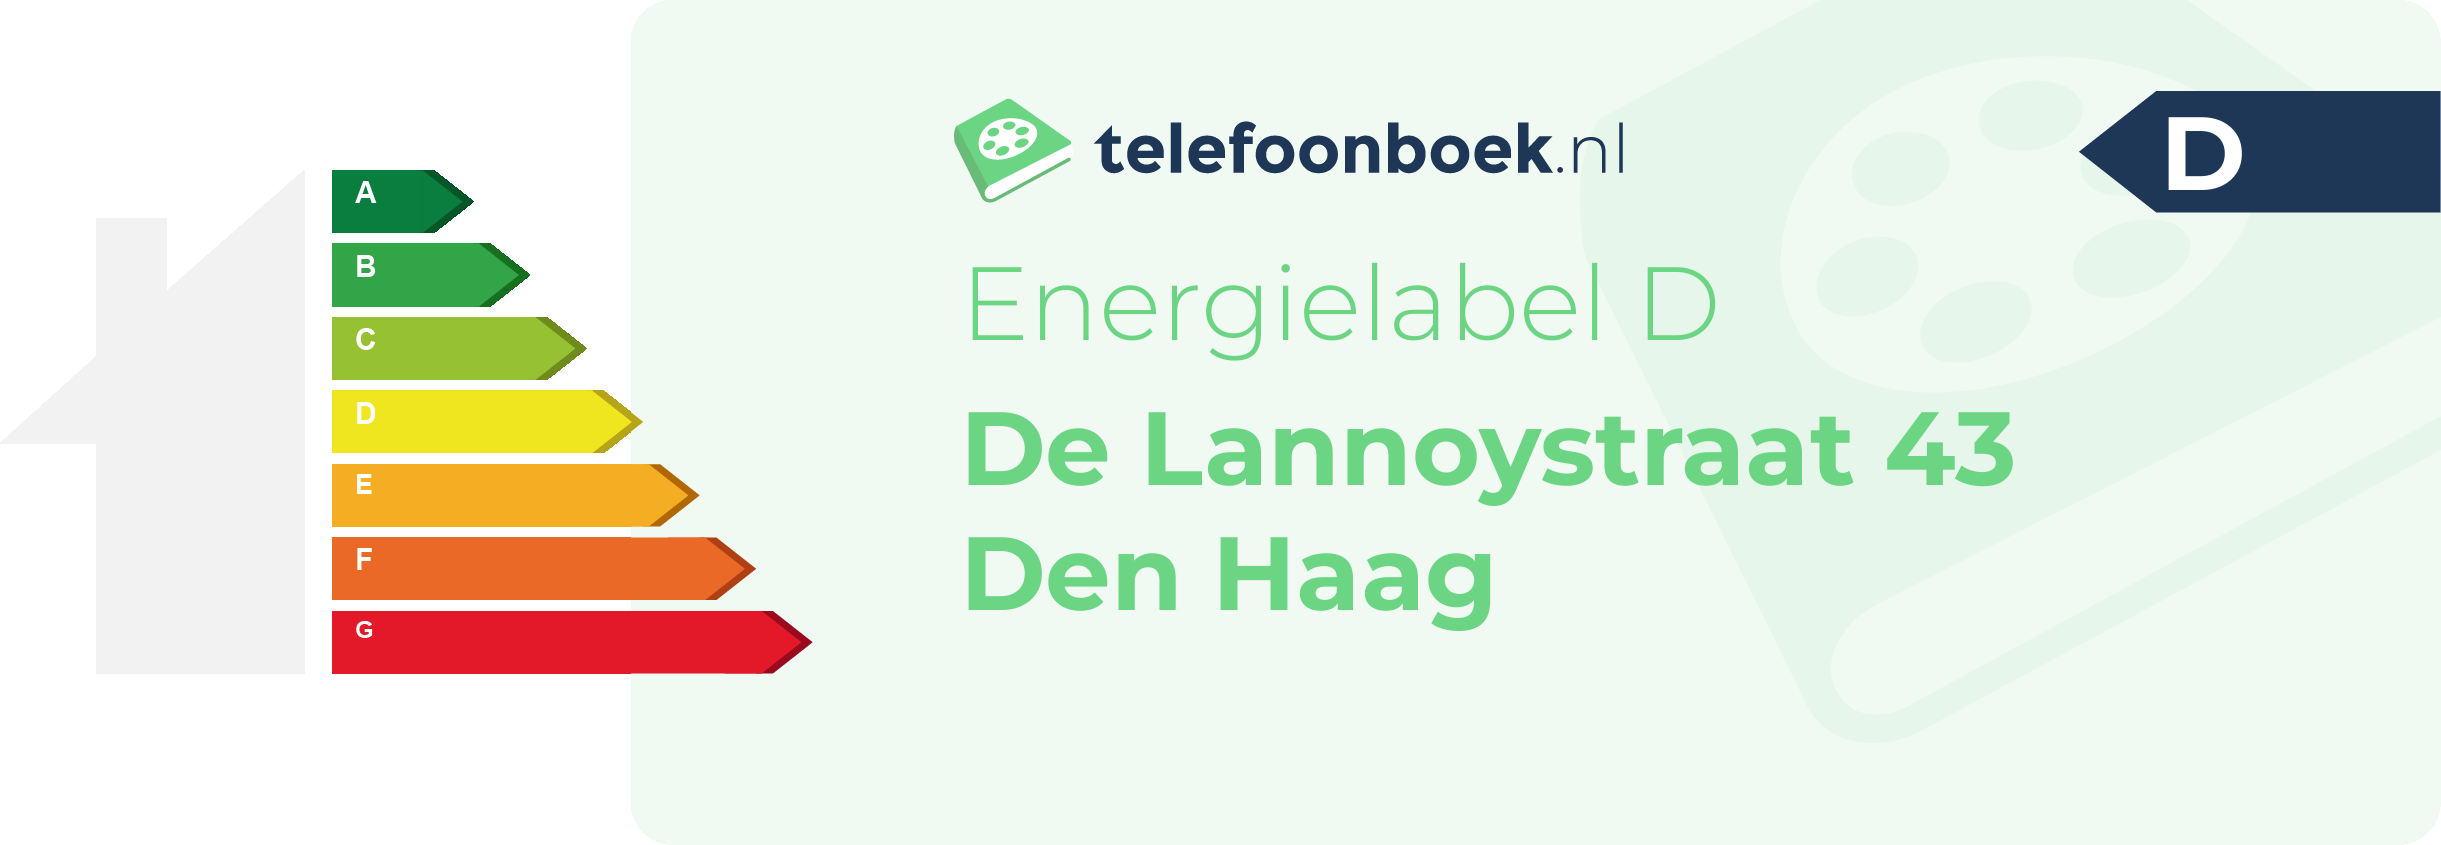 Energielabel De Lannoystraat 43 Den Haag